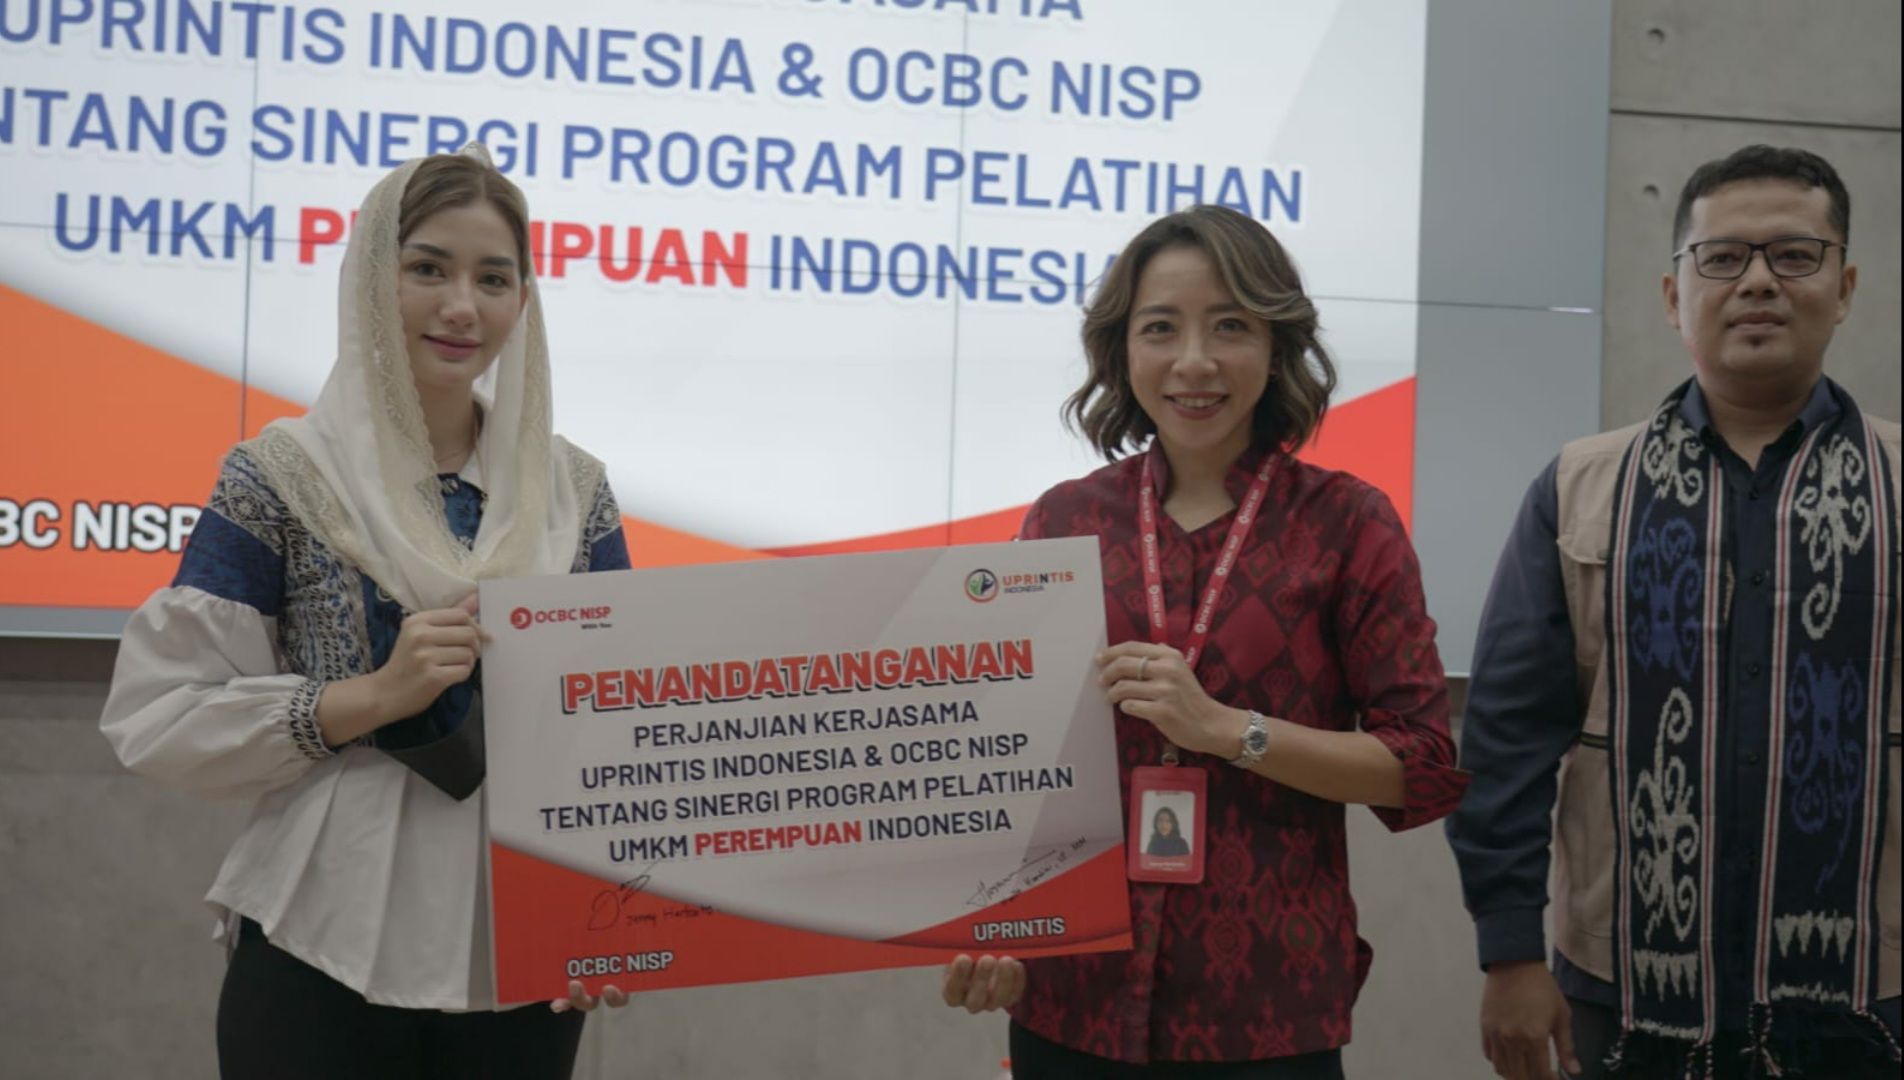 Bank OCBC NISP dan UPRINTIS Indonesia melakukan penandatanganan kerja sama untuk meningkatkan pengetahuan dan keterampilan UMKM Perempuan Indonesia secara berkelanjutan.